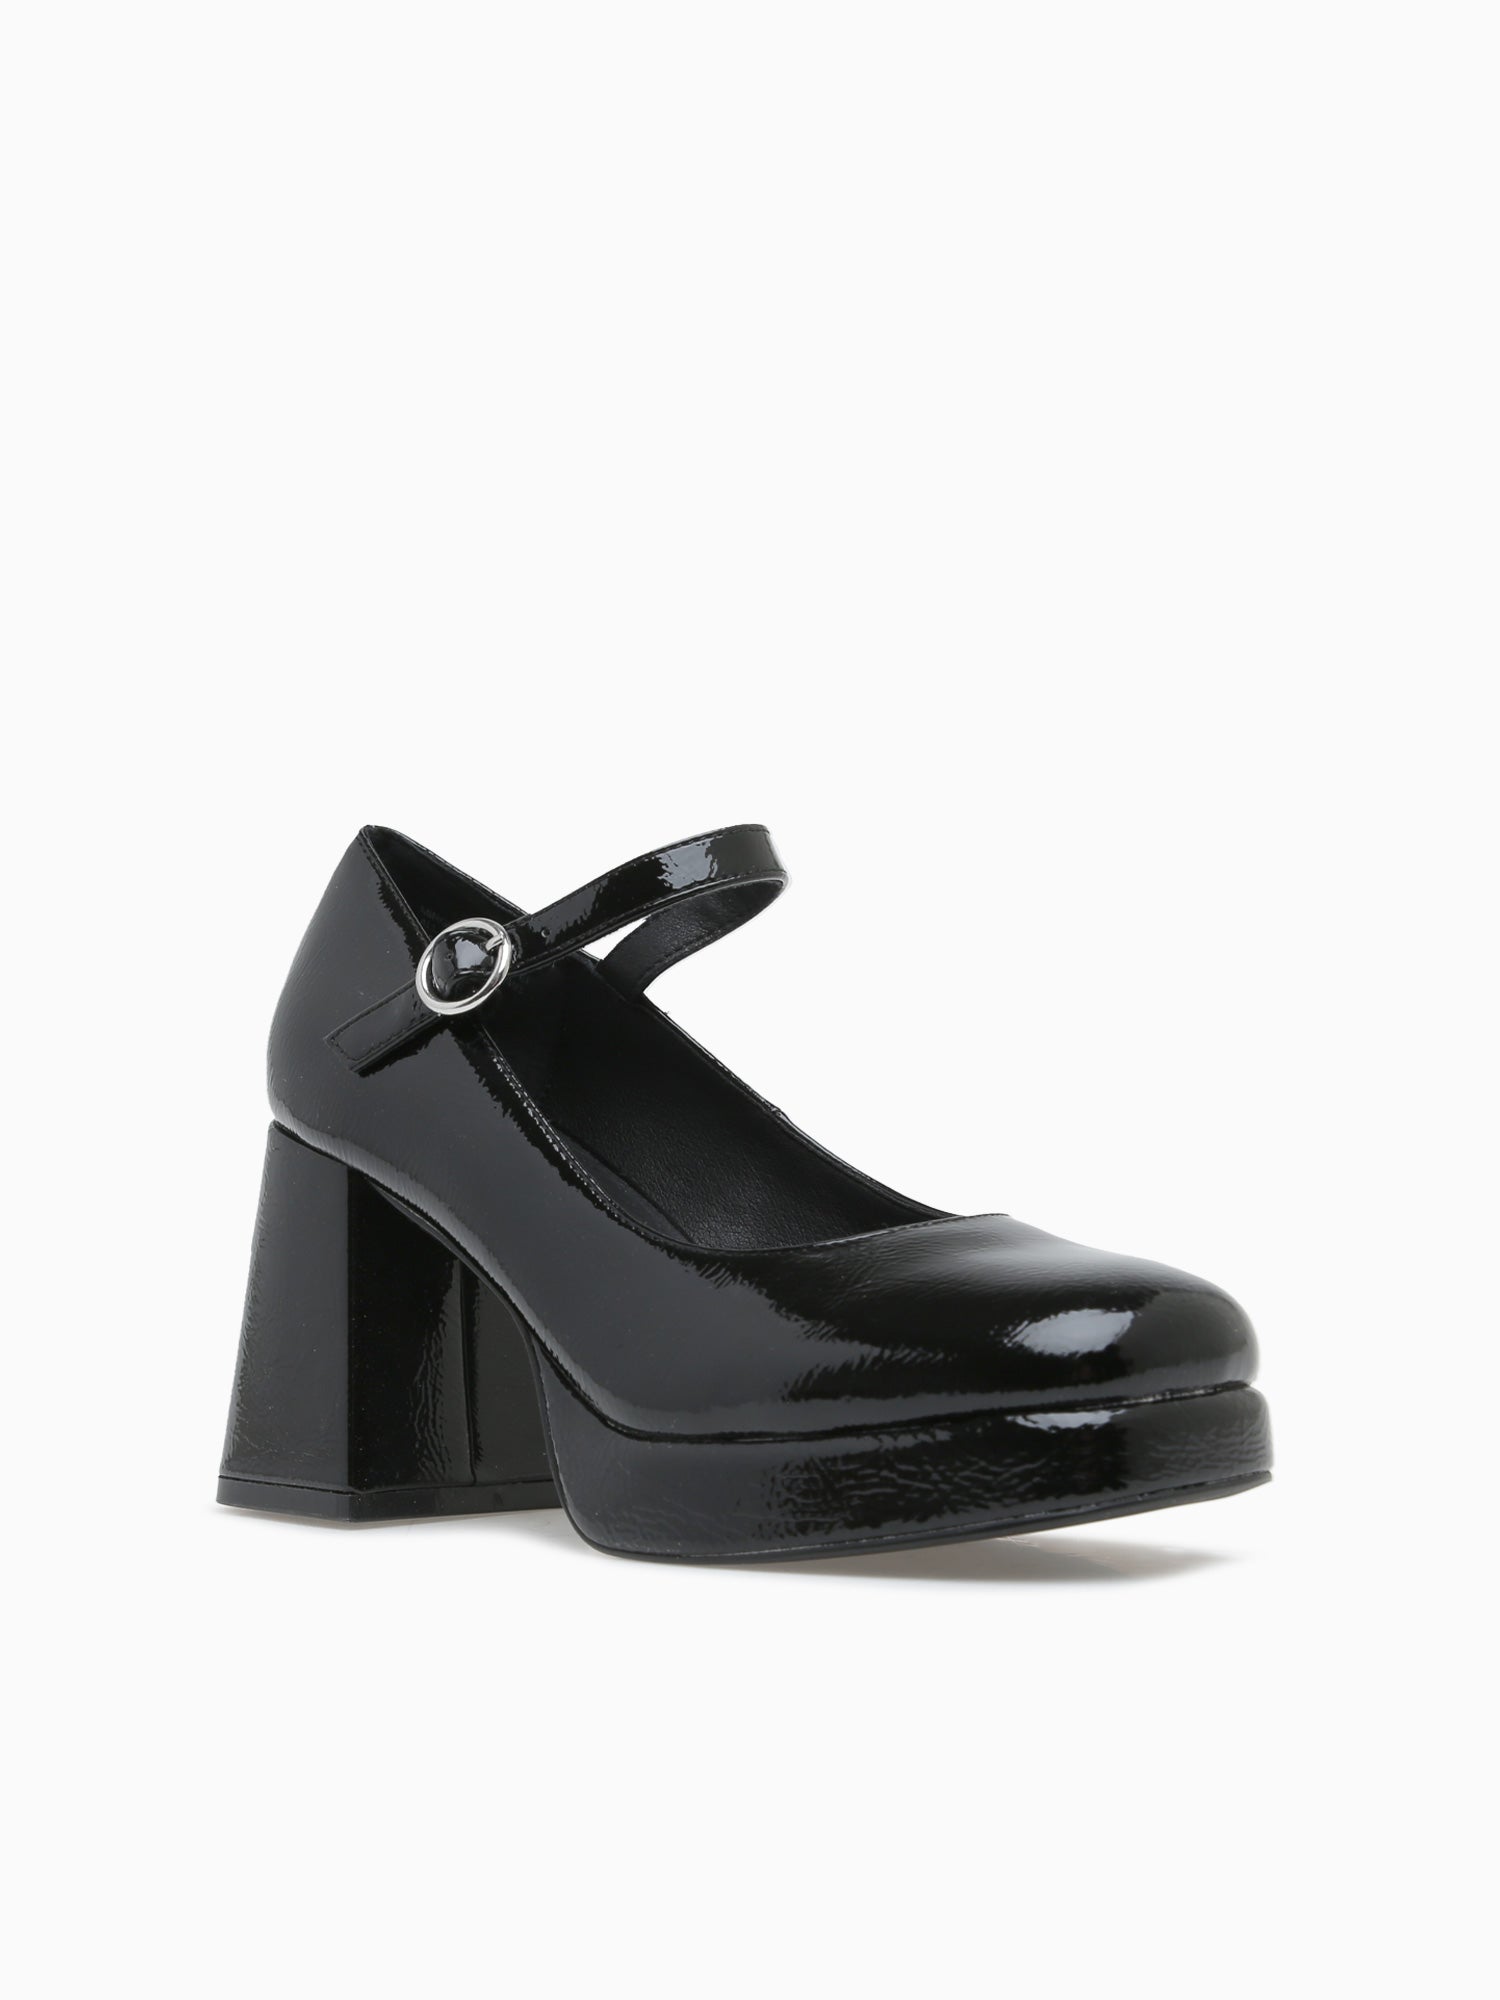 Mingle Black Patent– Novus Shoes